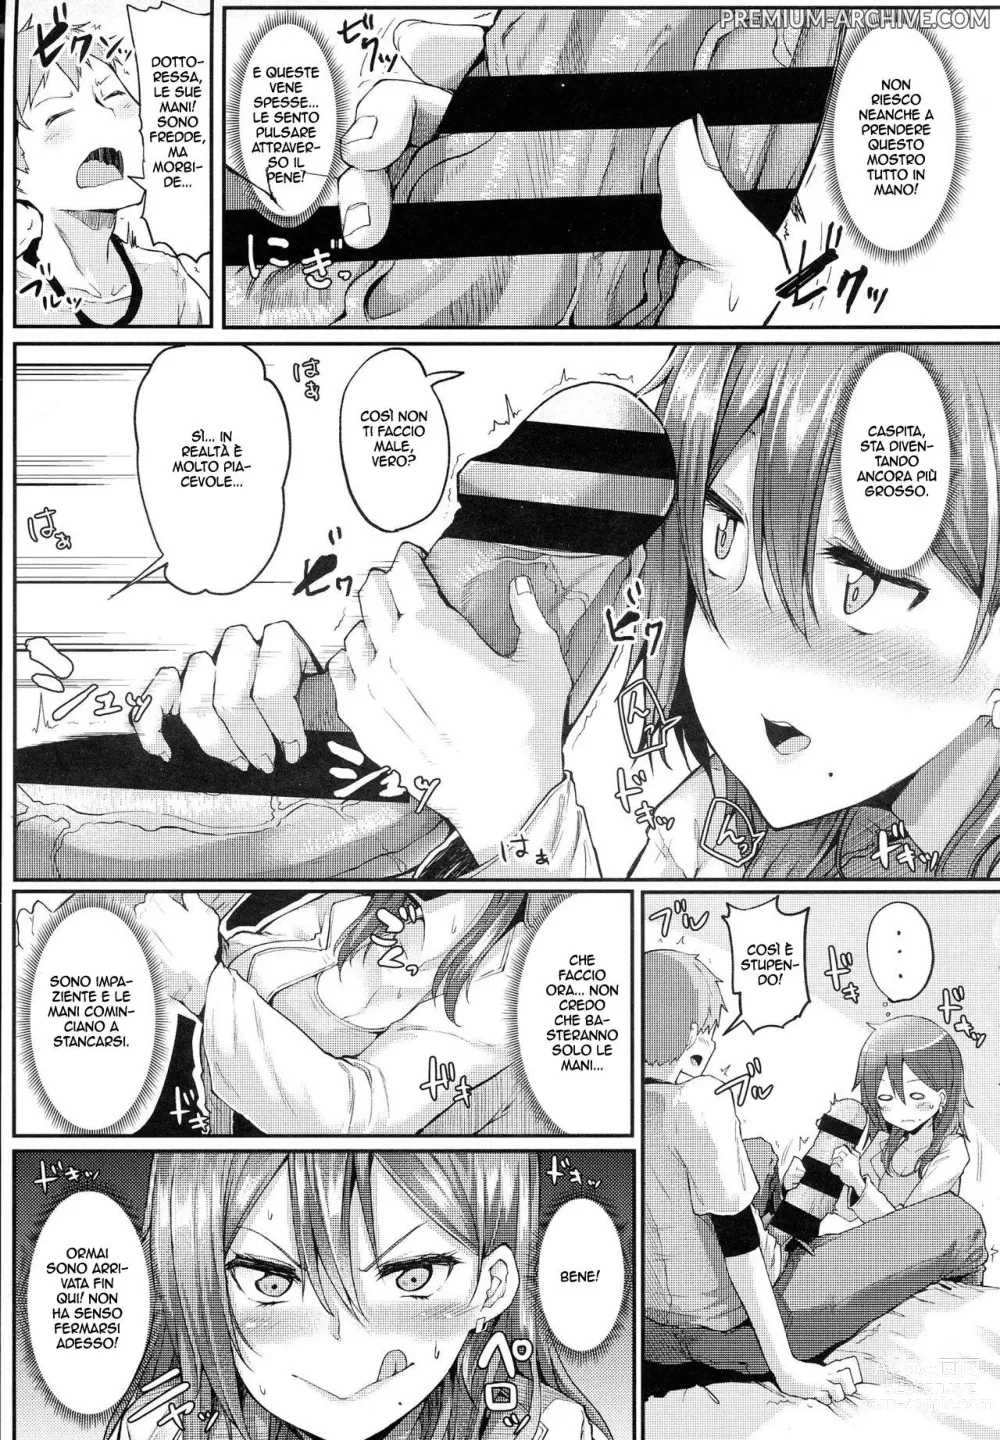 Page 7 of manga Goditela!